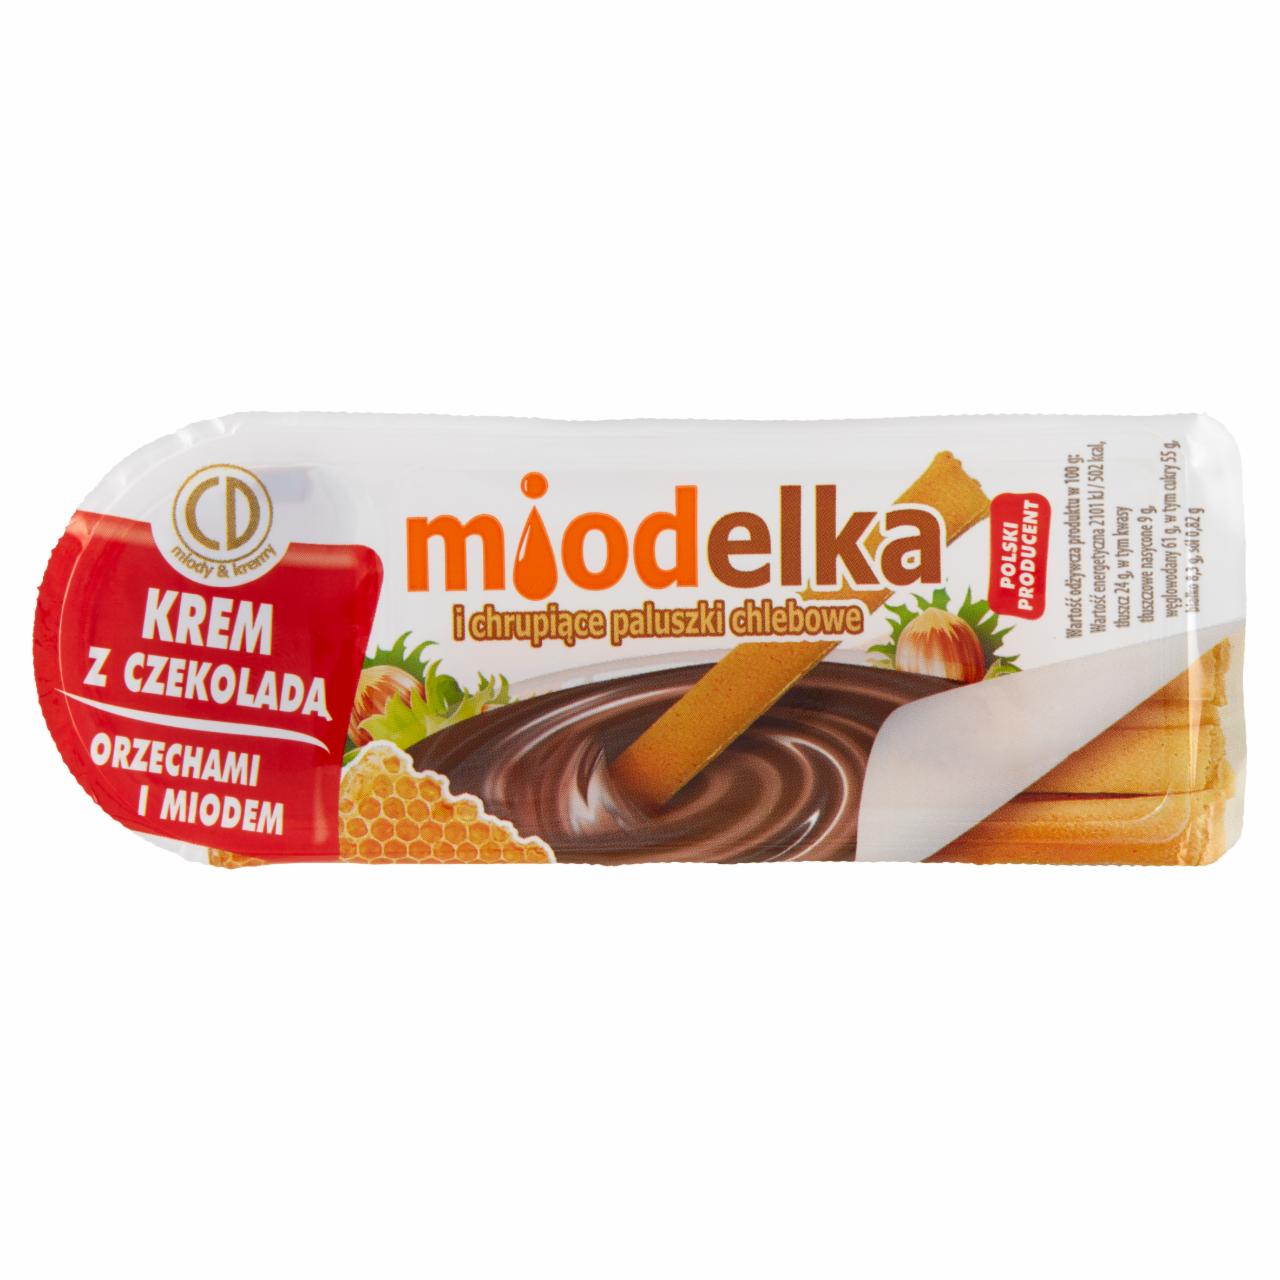 Zdjęcia - Miodelka Krem z czekoladą orzechami i miodem i chrupiące paluszki chlebowe 25 g